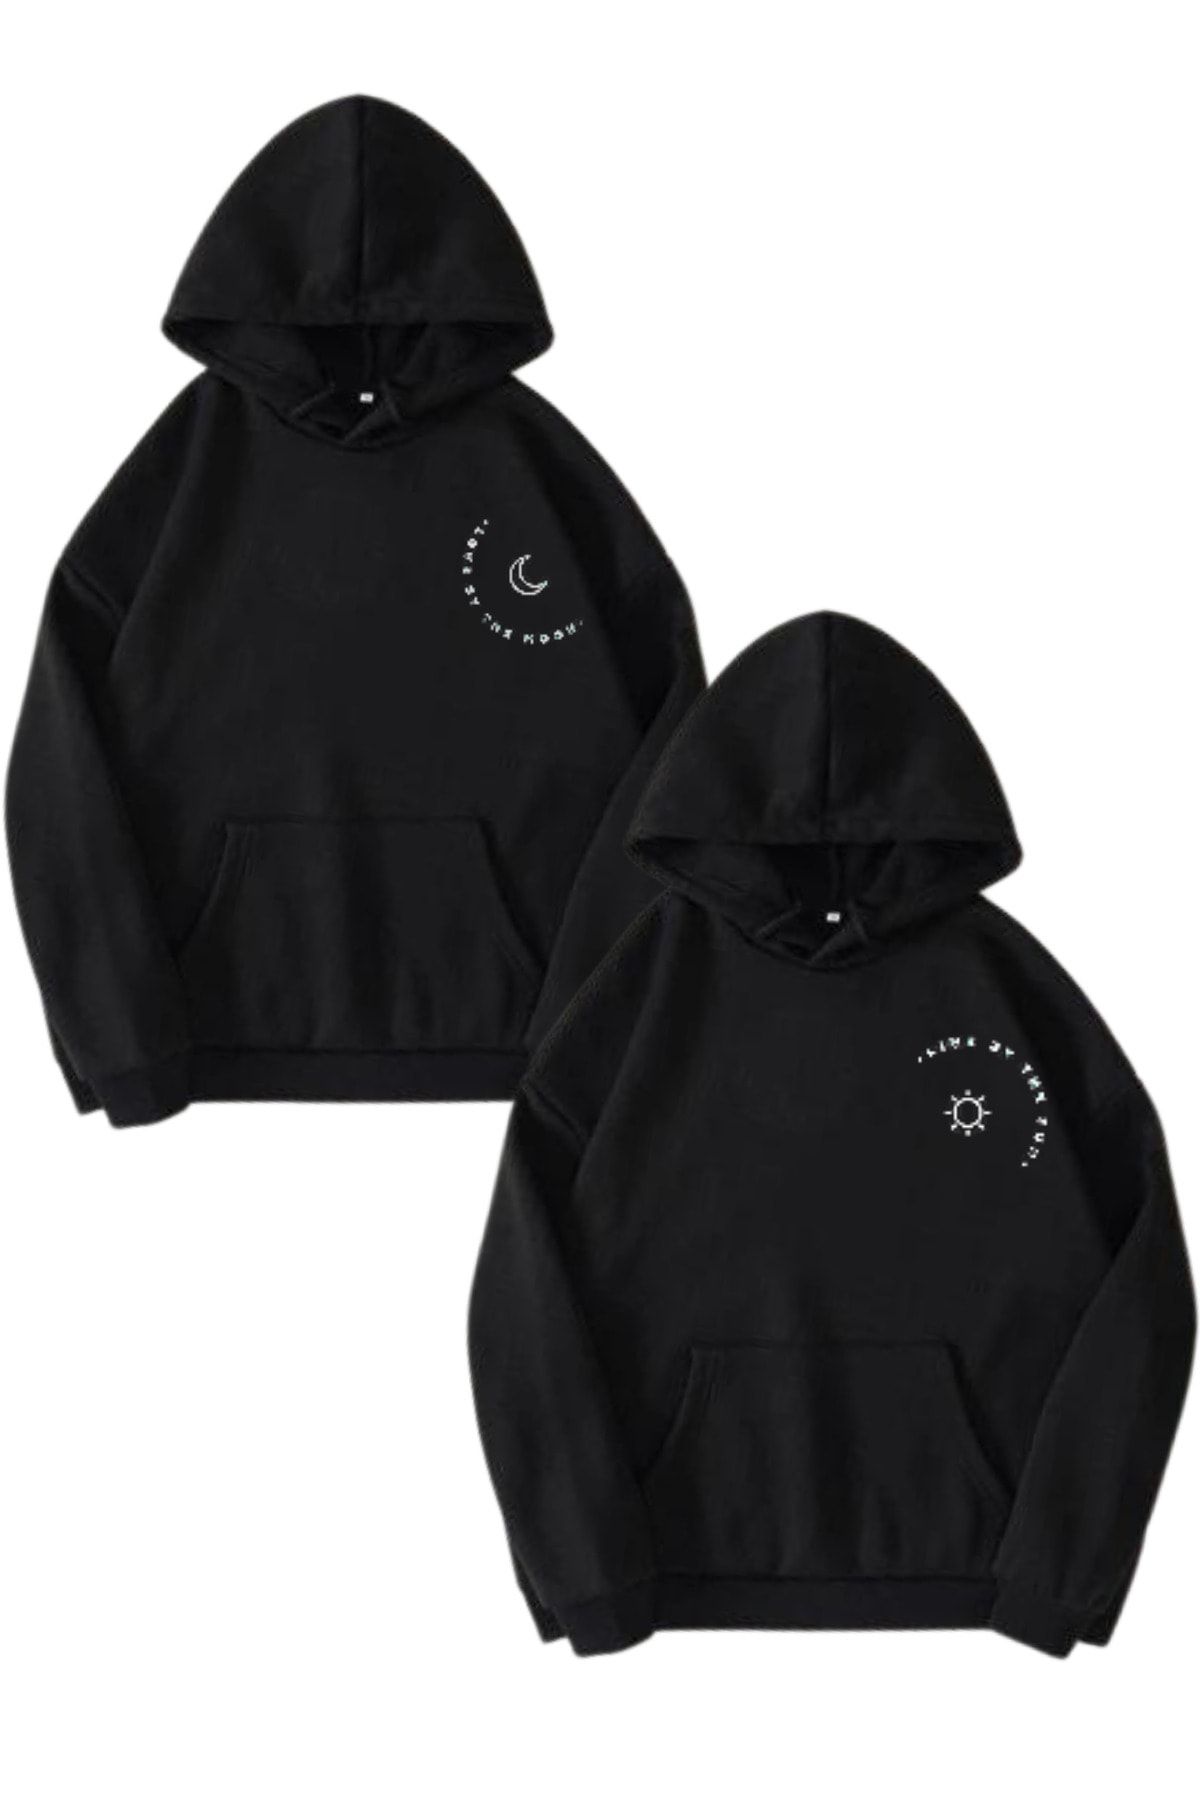 MODAGEN Sevgili Çift Kombini Moon Ve Sun Yazılı Tasarım 2'li Ürün Siyah Kapüşonlu Oversize Sweatshirt Hoodie